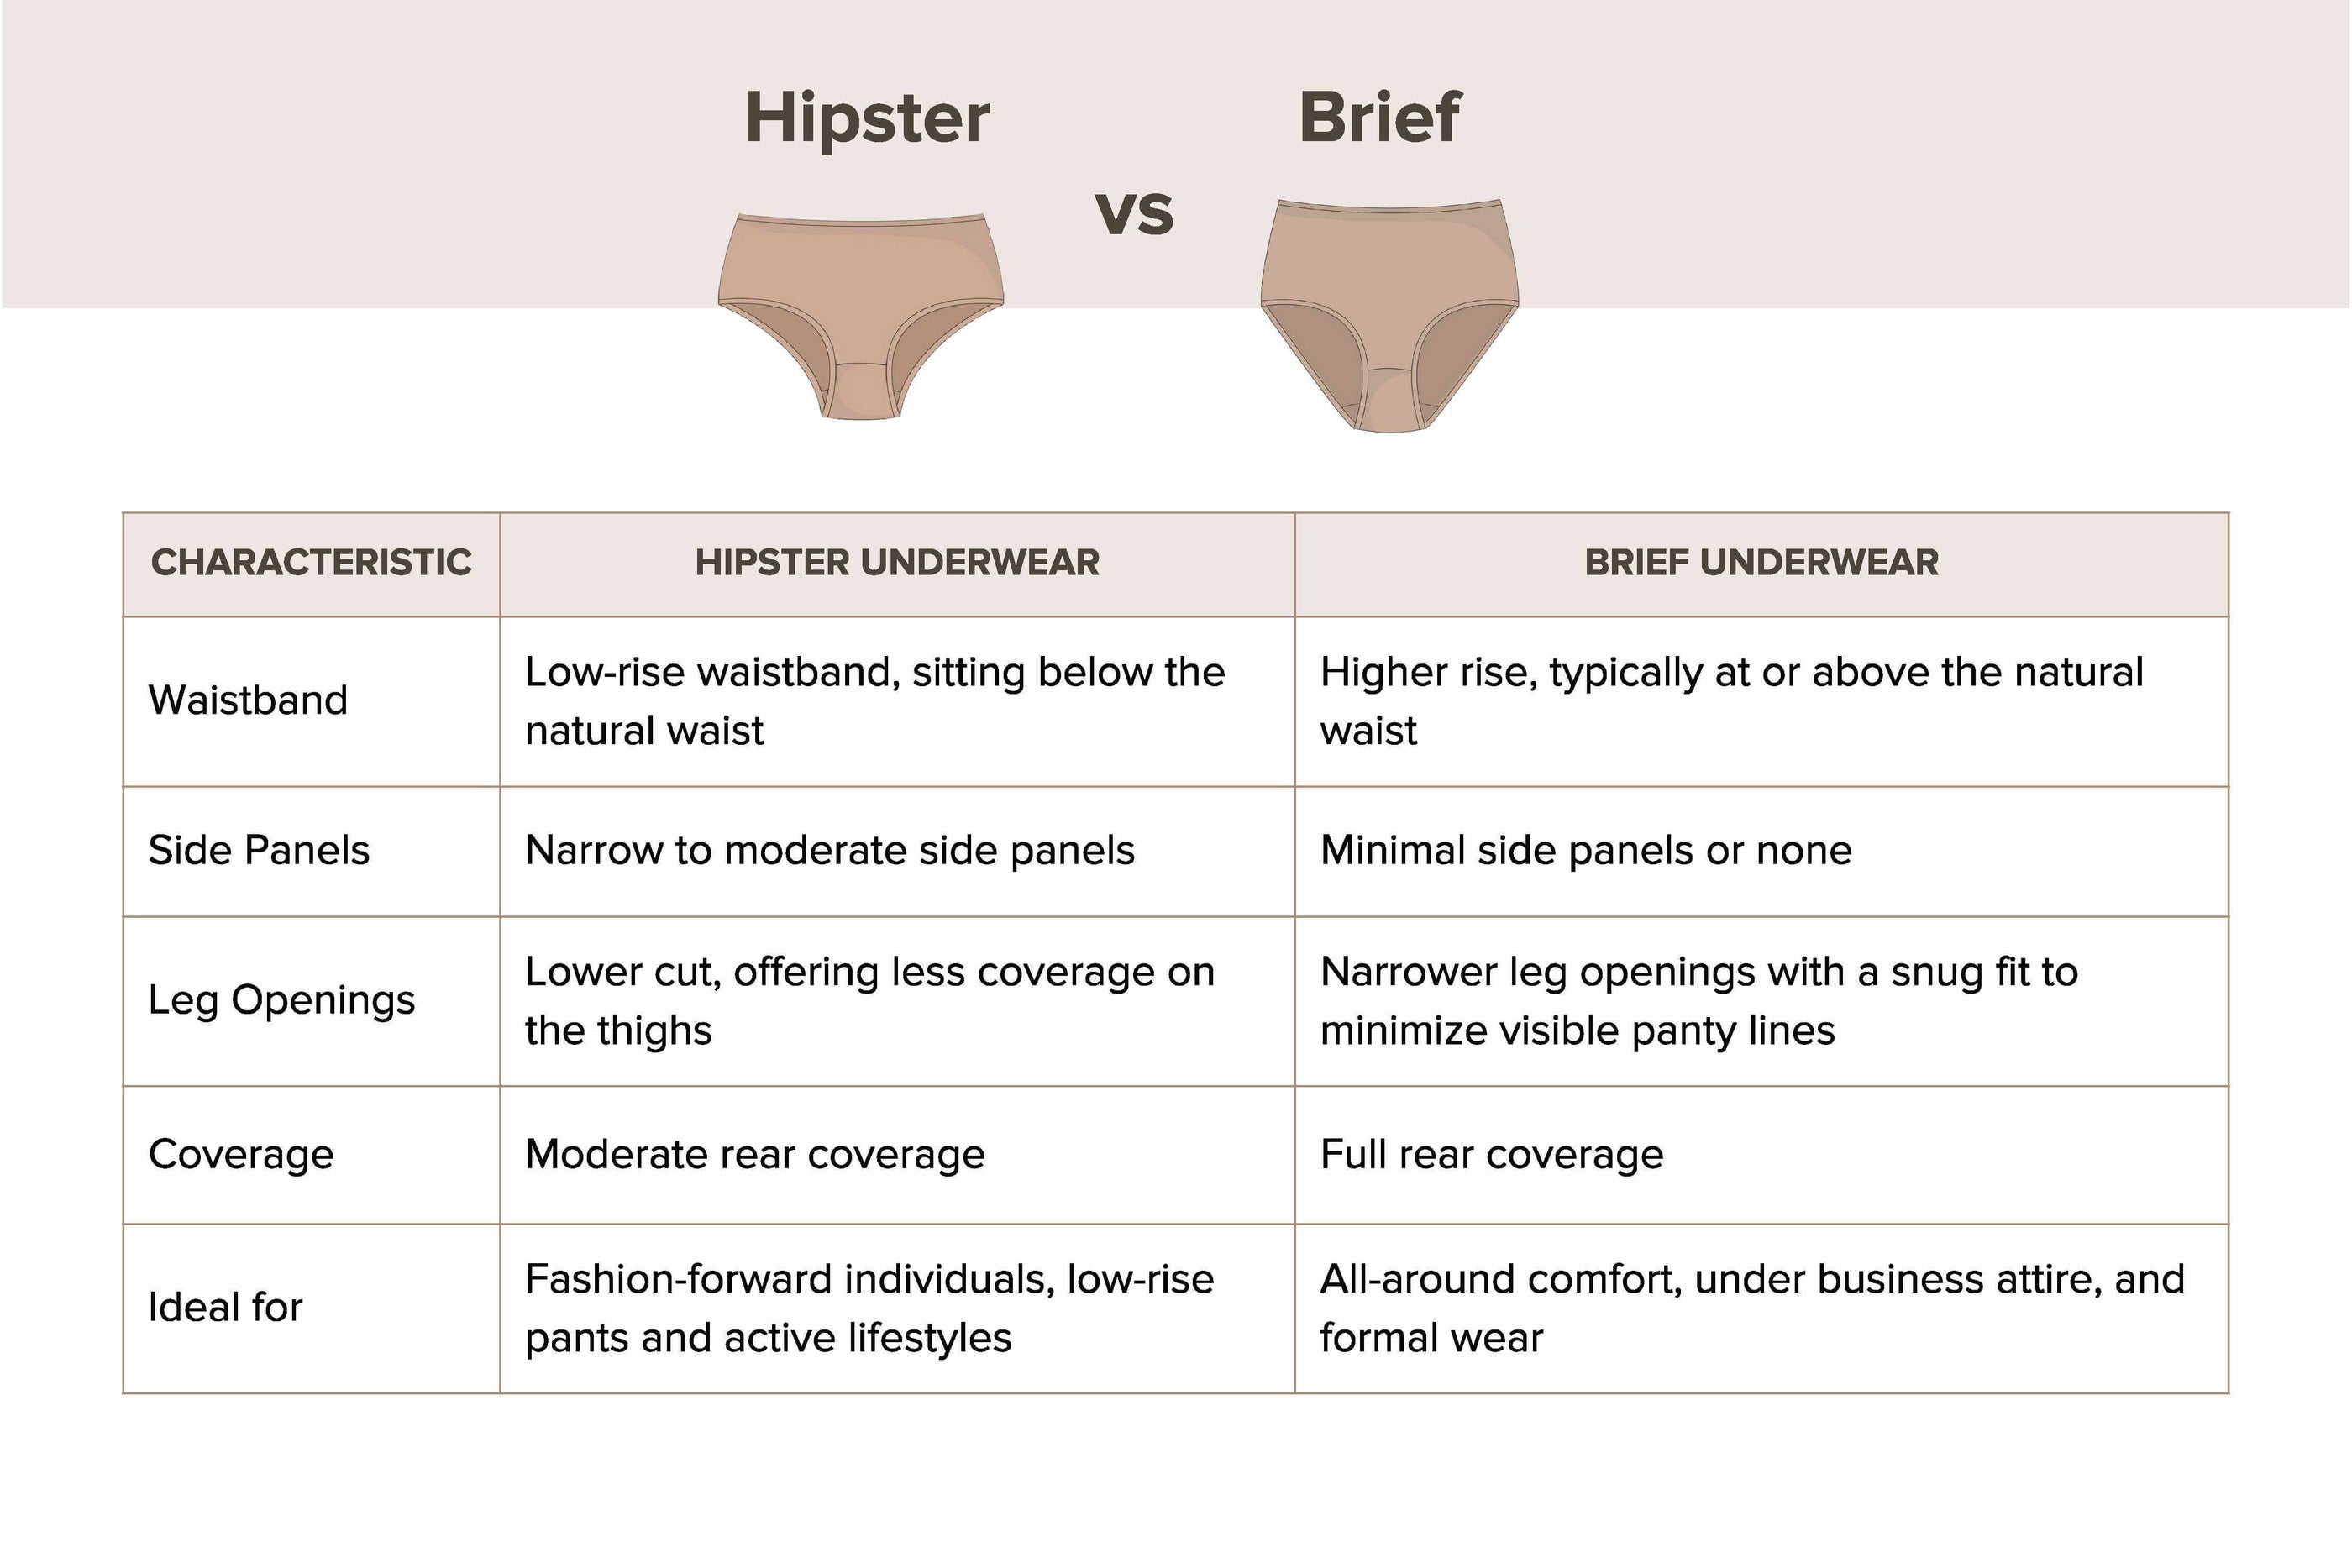 What is Hipster Underwear?